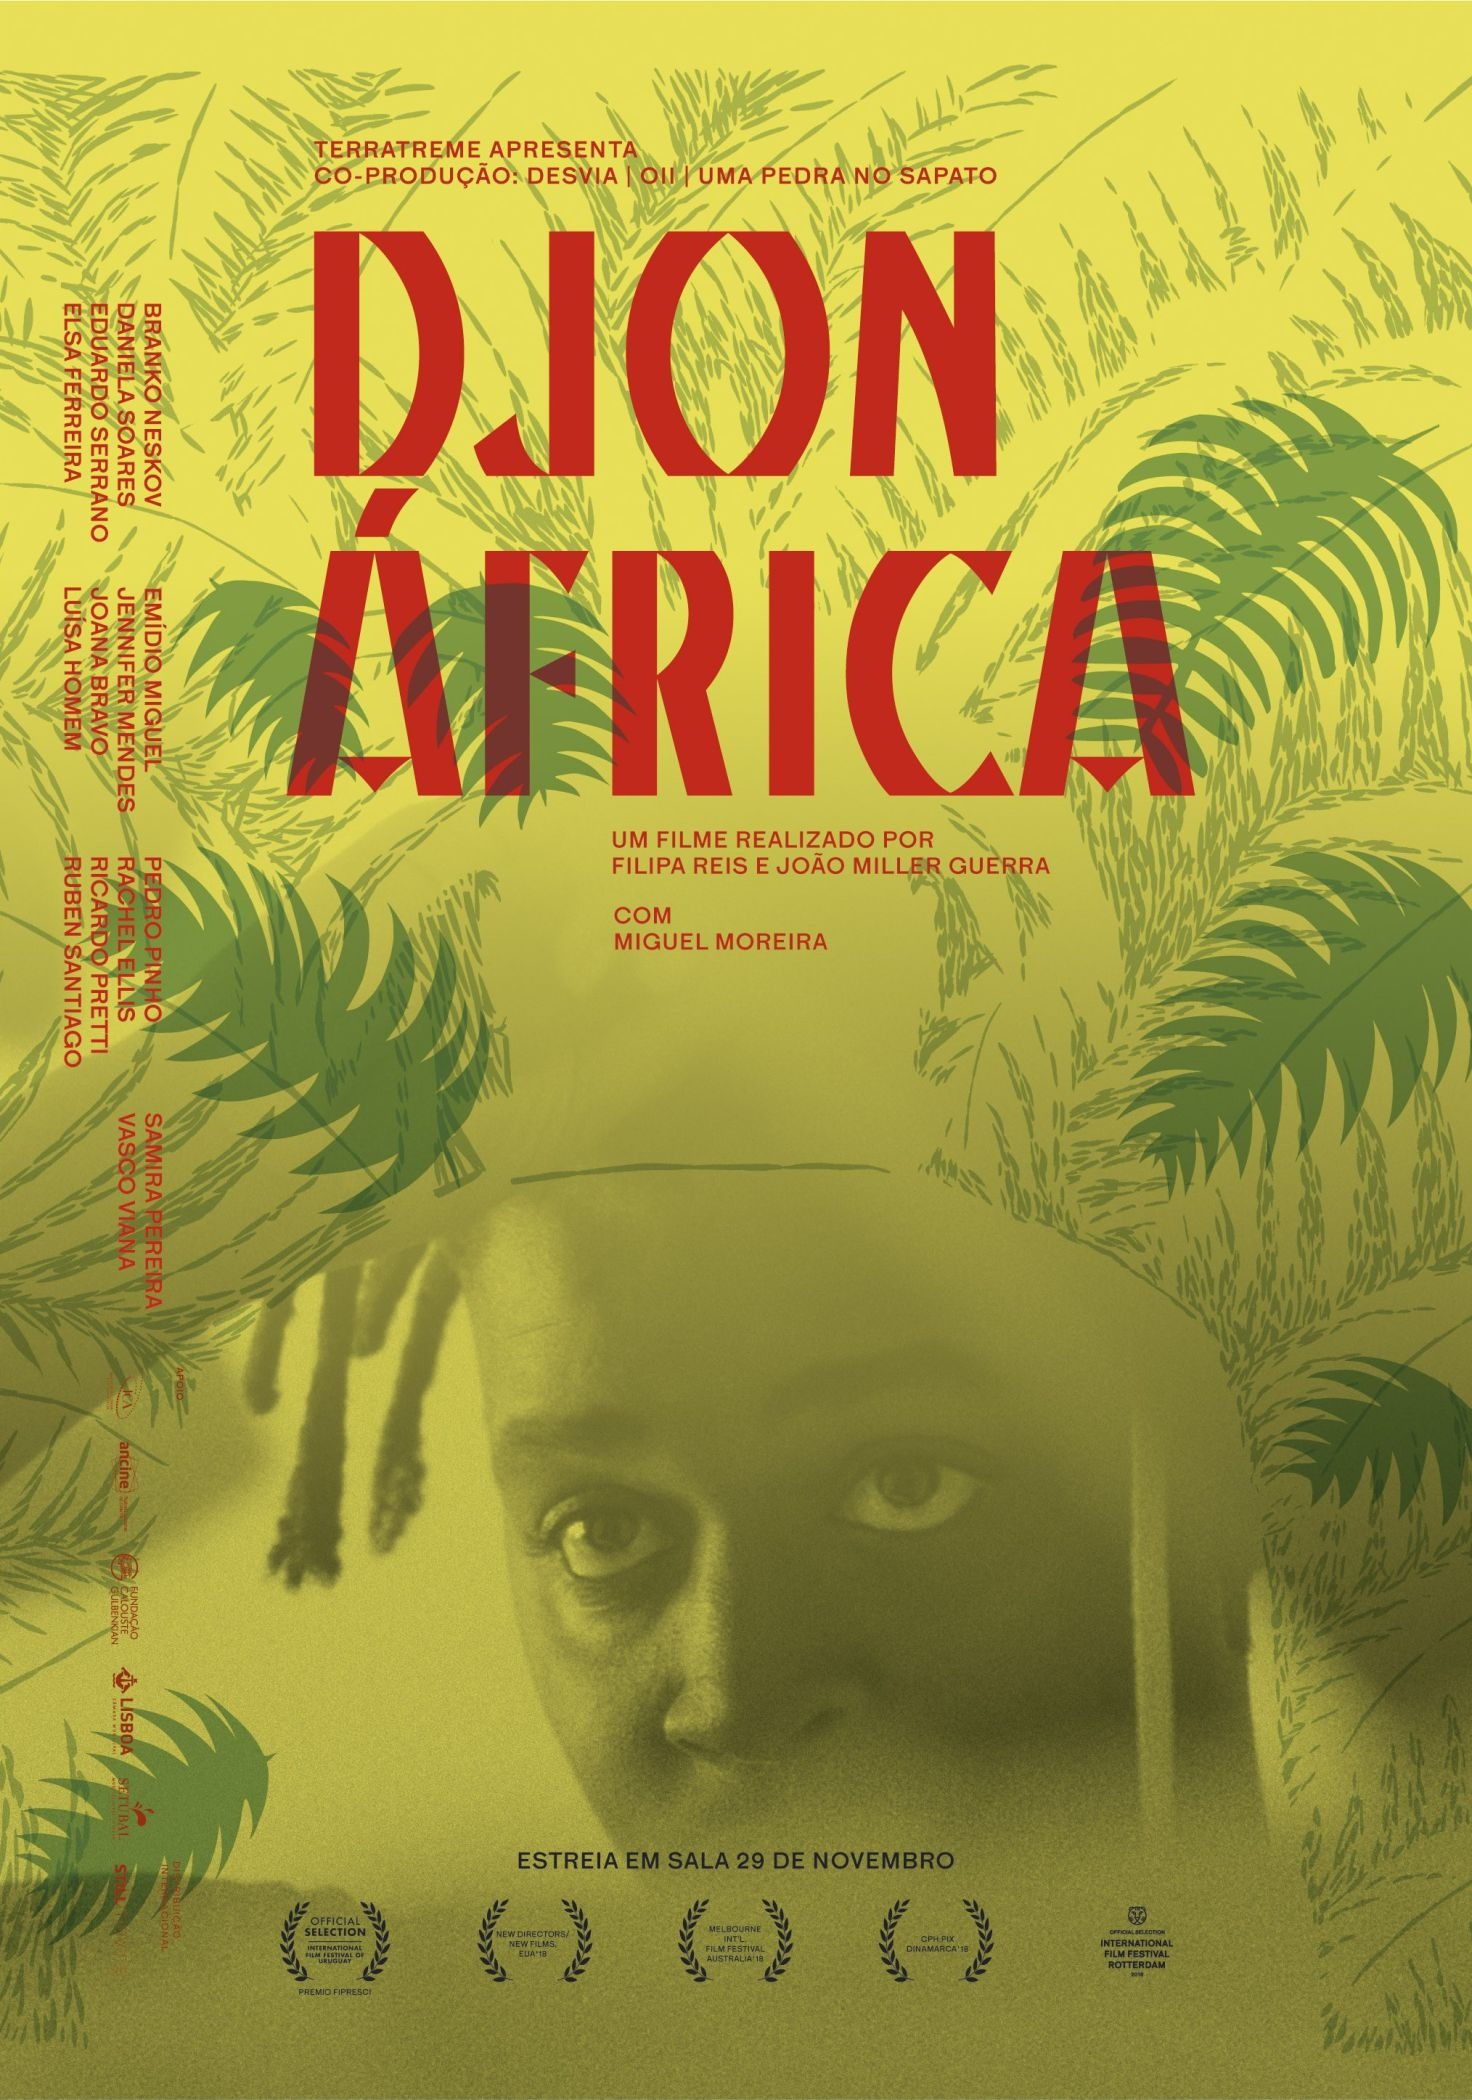 Mega Sized Movie Poster Image for Djon Africa (#2 of 2)